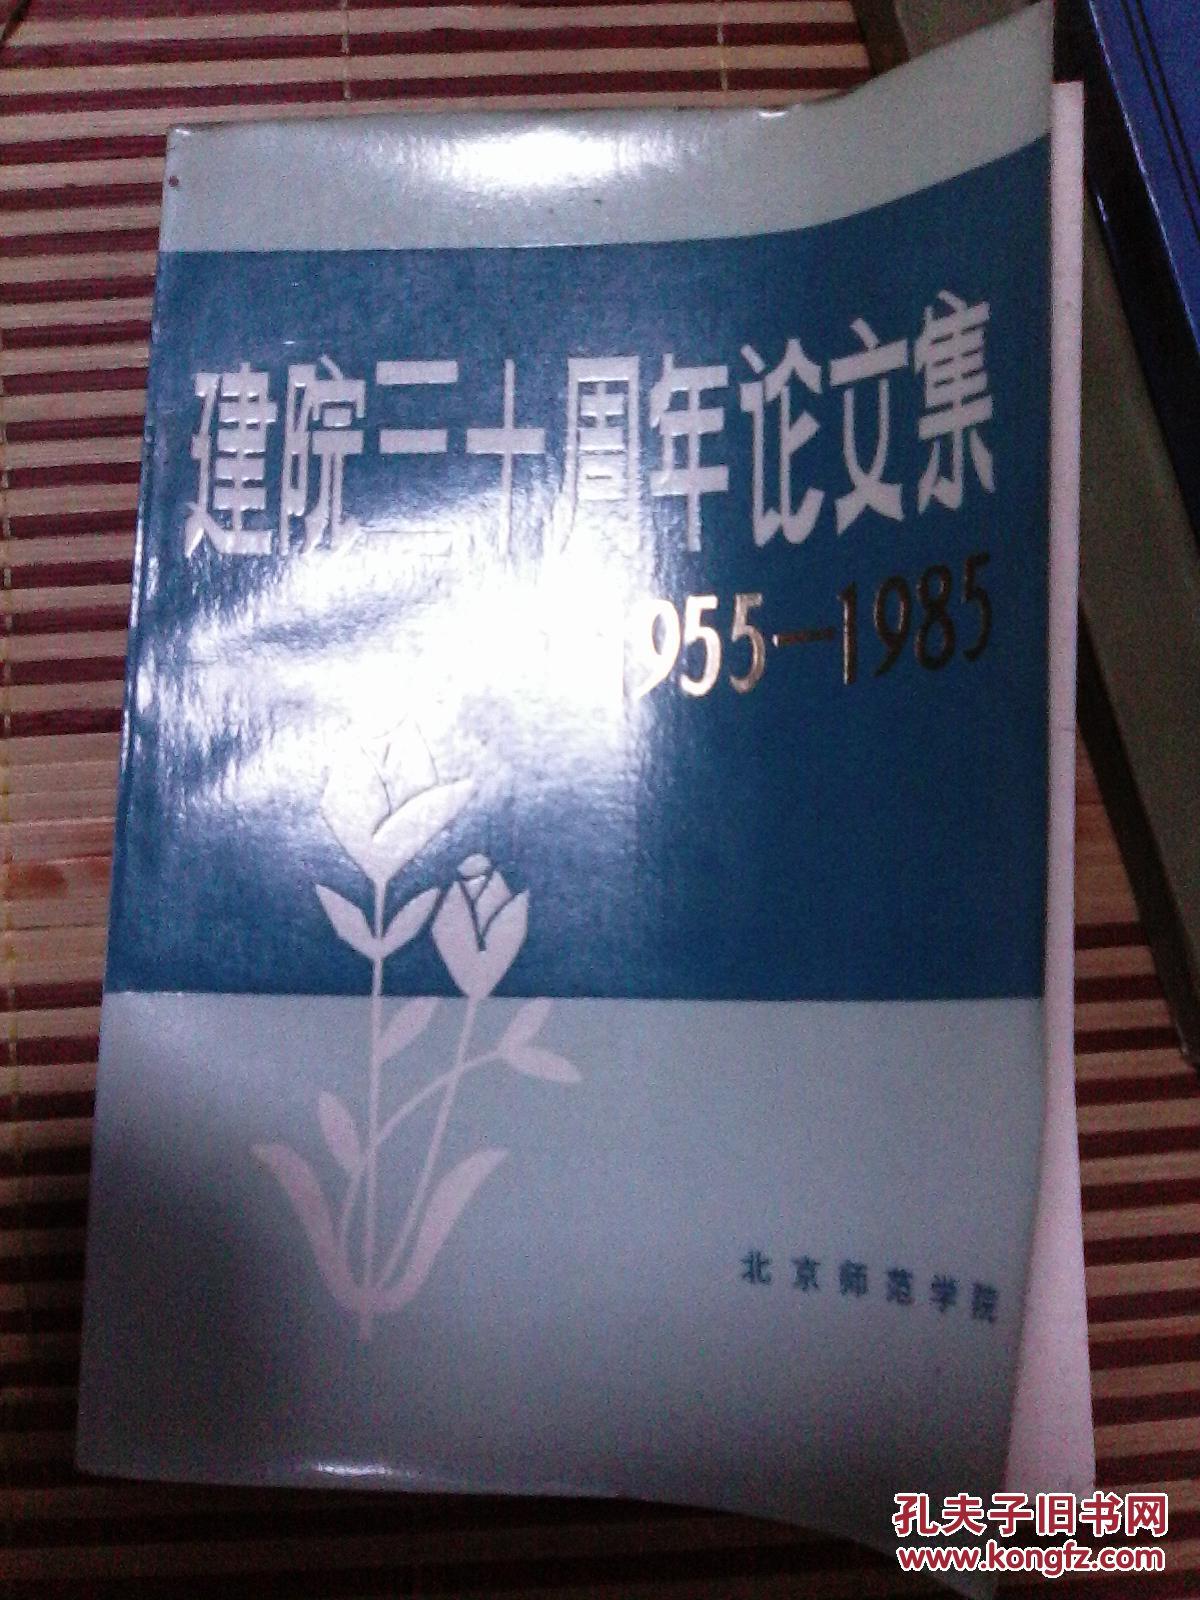 建院三十周年论文集:1955-1985:中文专集